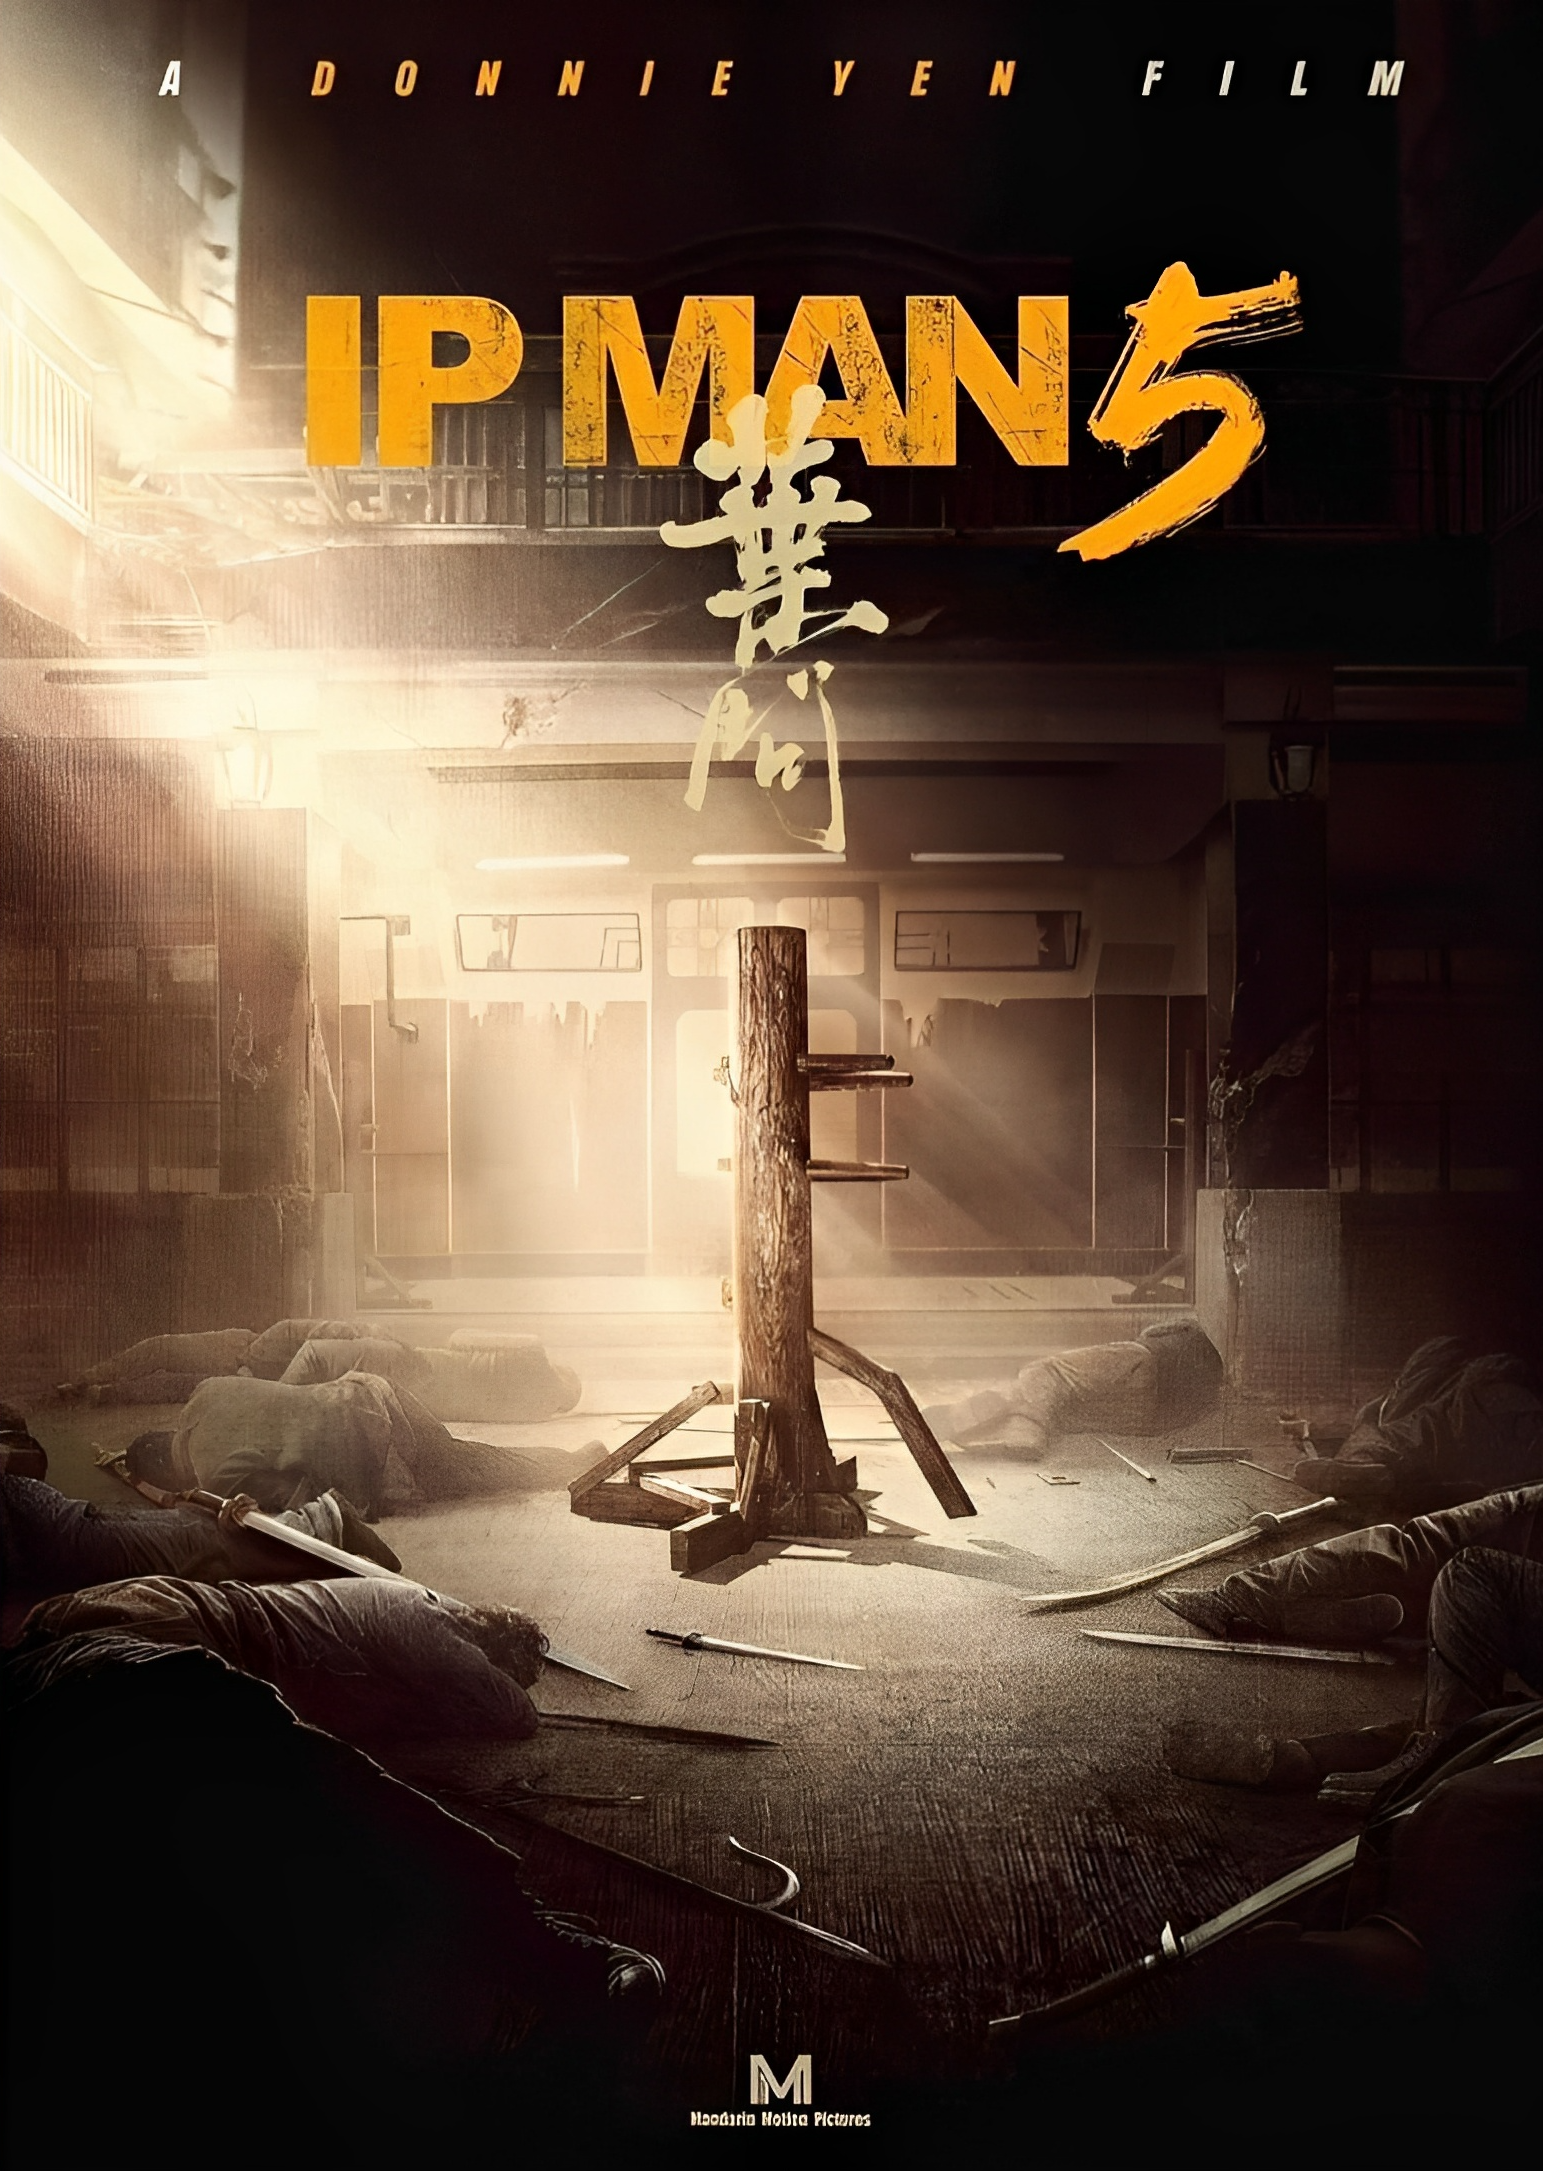 'IP MAN 5' Poster